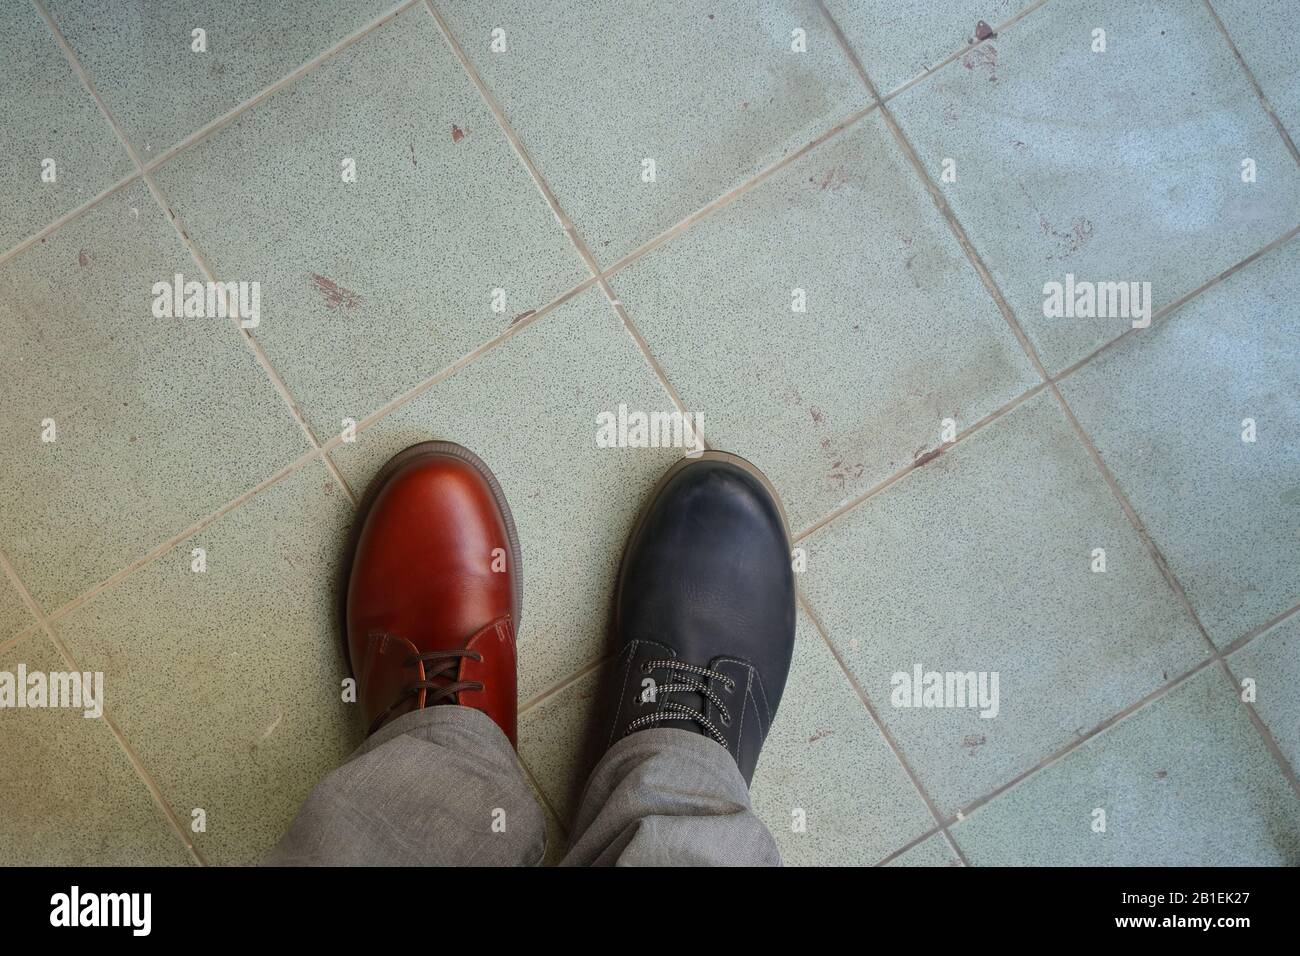 Gros plan de chaussures mal assorties, un homme portant deux chaussures différentes et différentes couleurs debout sur sol carrelé, briser les règles, métapho révolution Banque D'Images